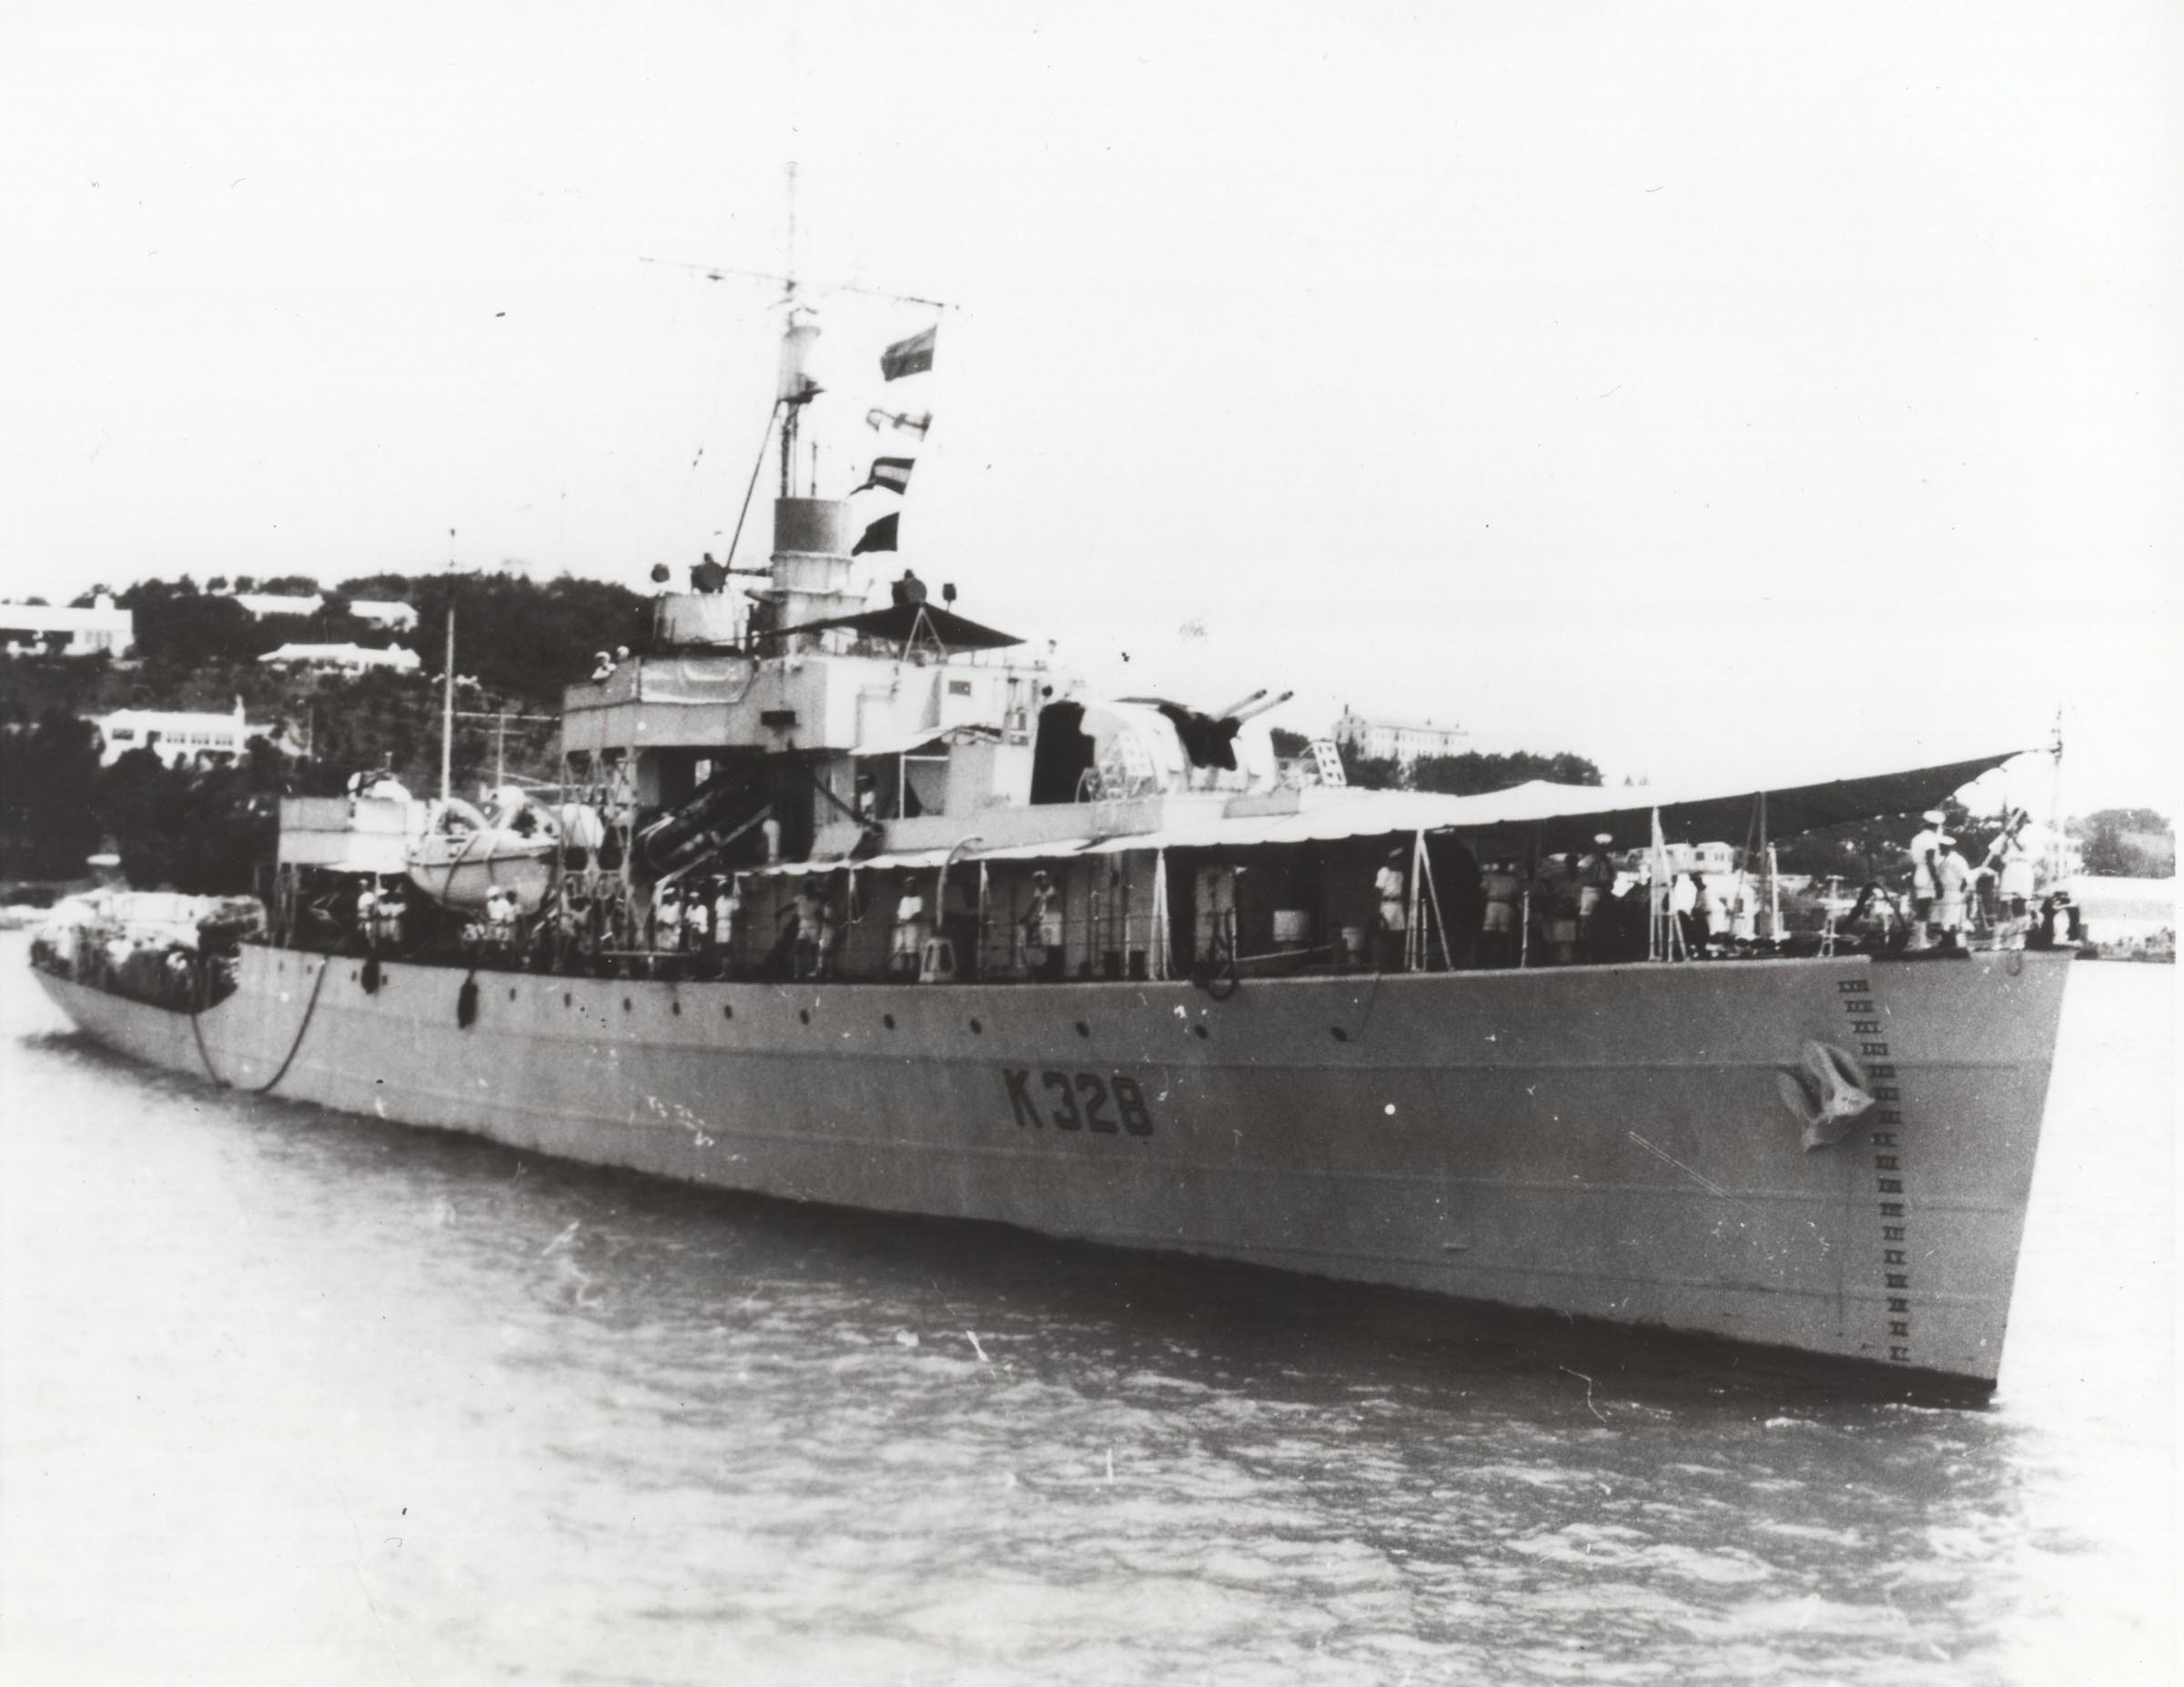 HMCS SWANSEA